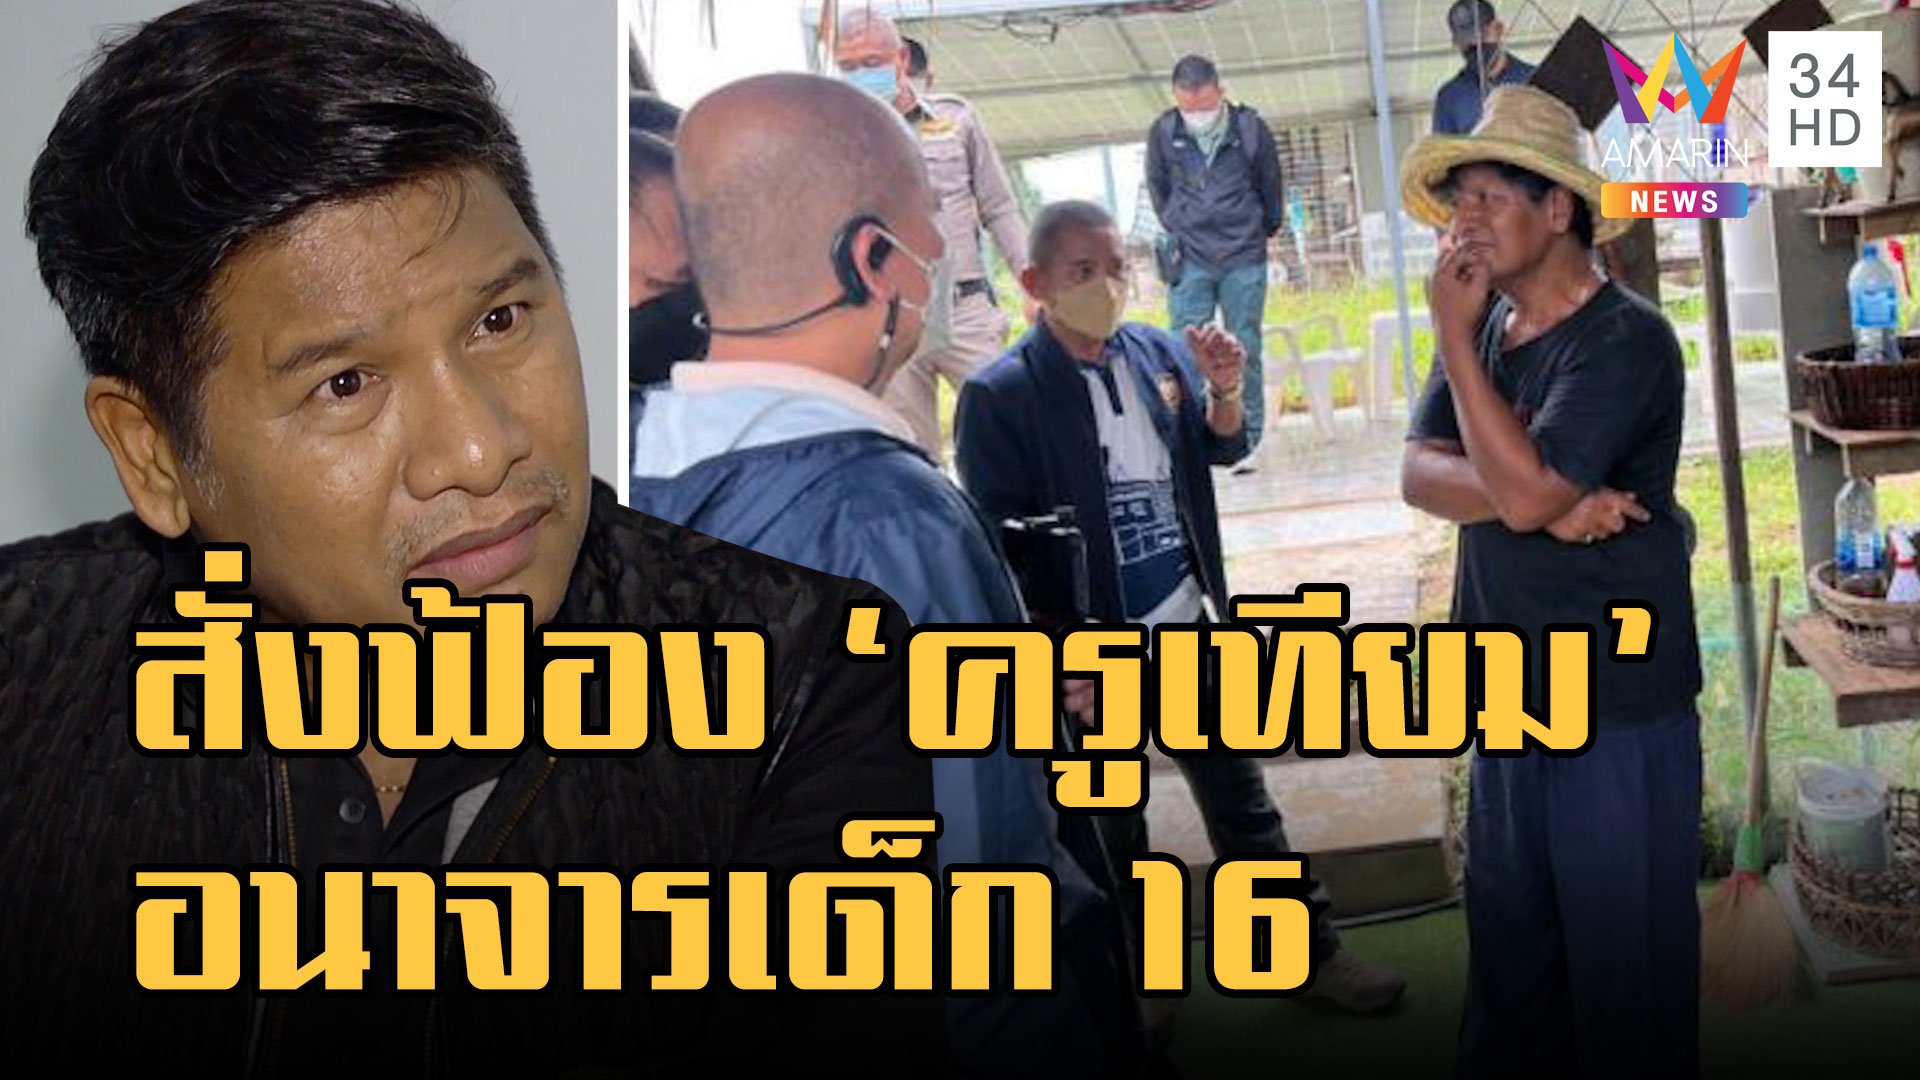 ช็อกวงการลูกทุ่งไทย บิ๊กโจ๊ก สั่งฟ้อง ครูเทียม อนาจารเด็ก 16 | ข่าวอรุณอมรินทร์ | 4 ม.ค. 66 | AMARIN TVHD34